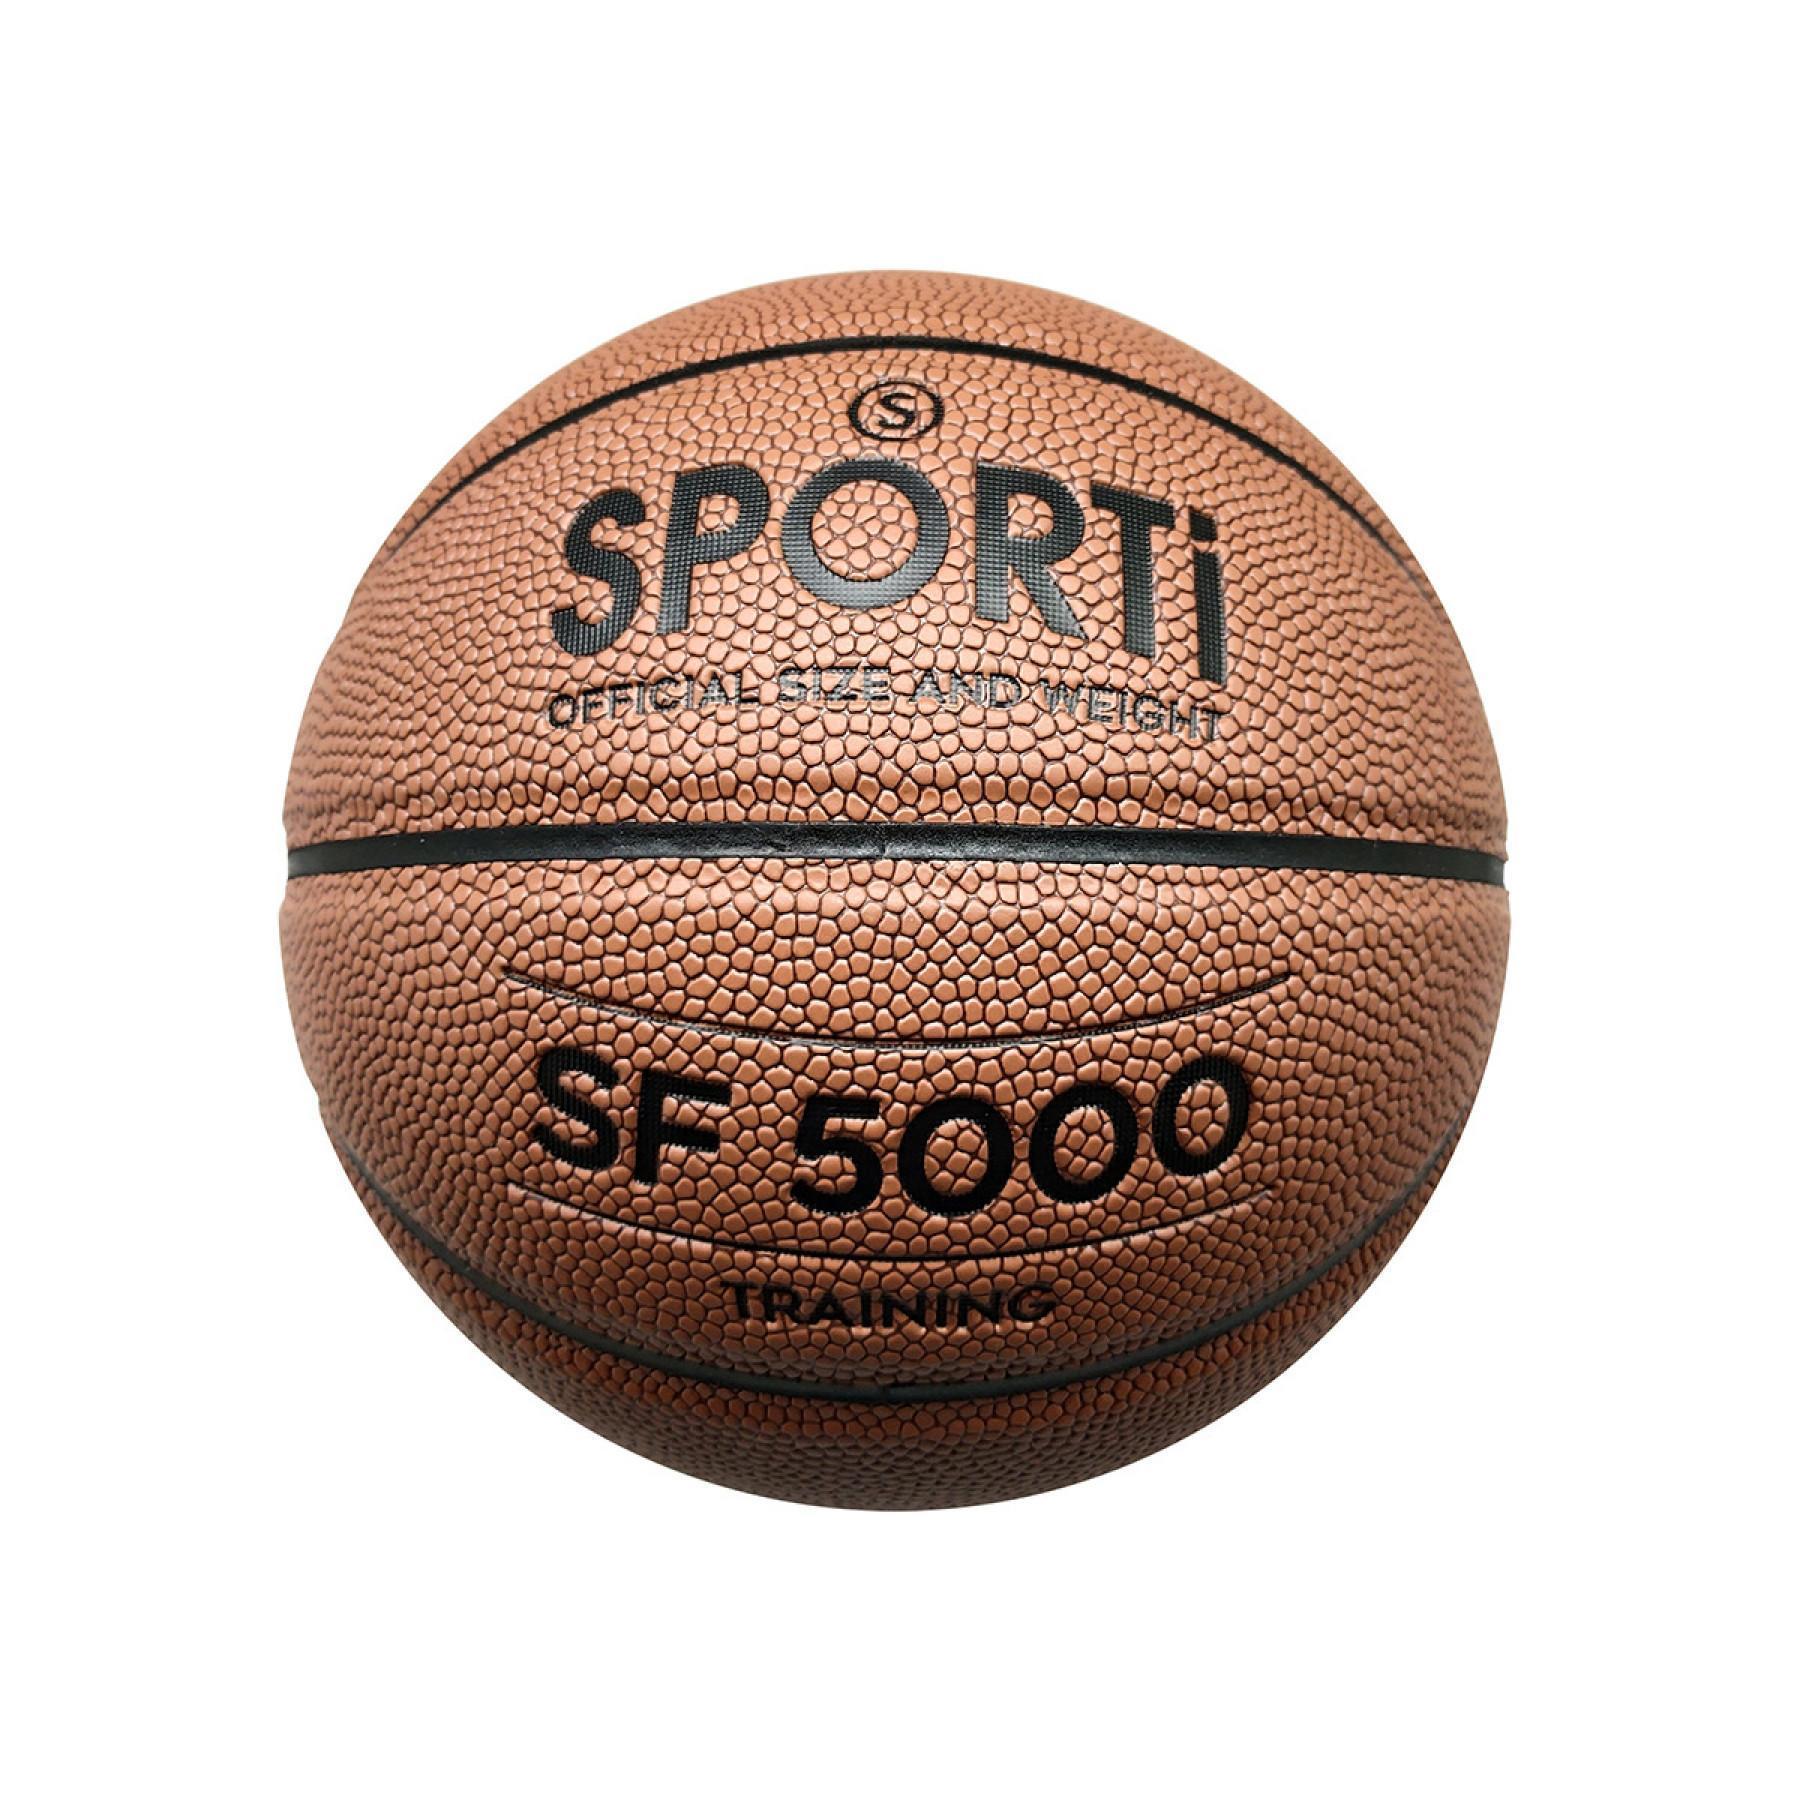 Ballon de basket ball cellulaire Sporti France